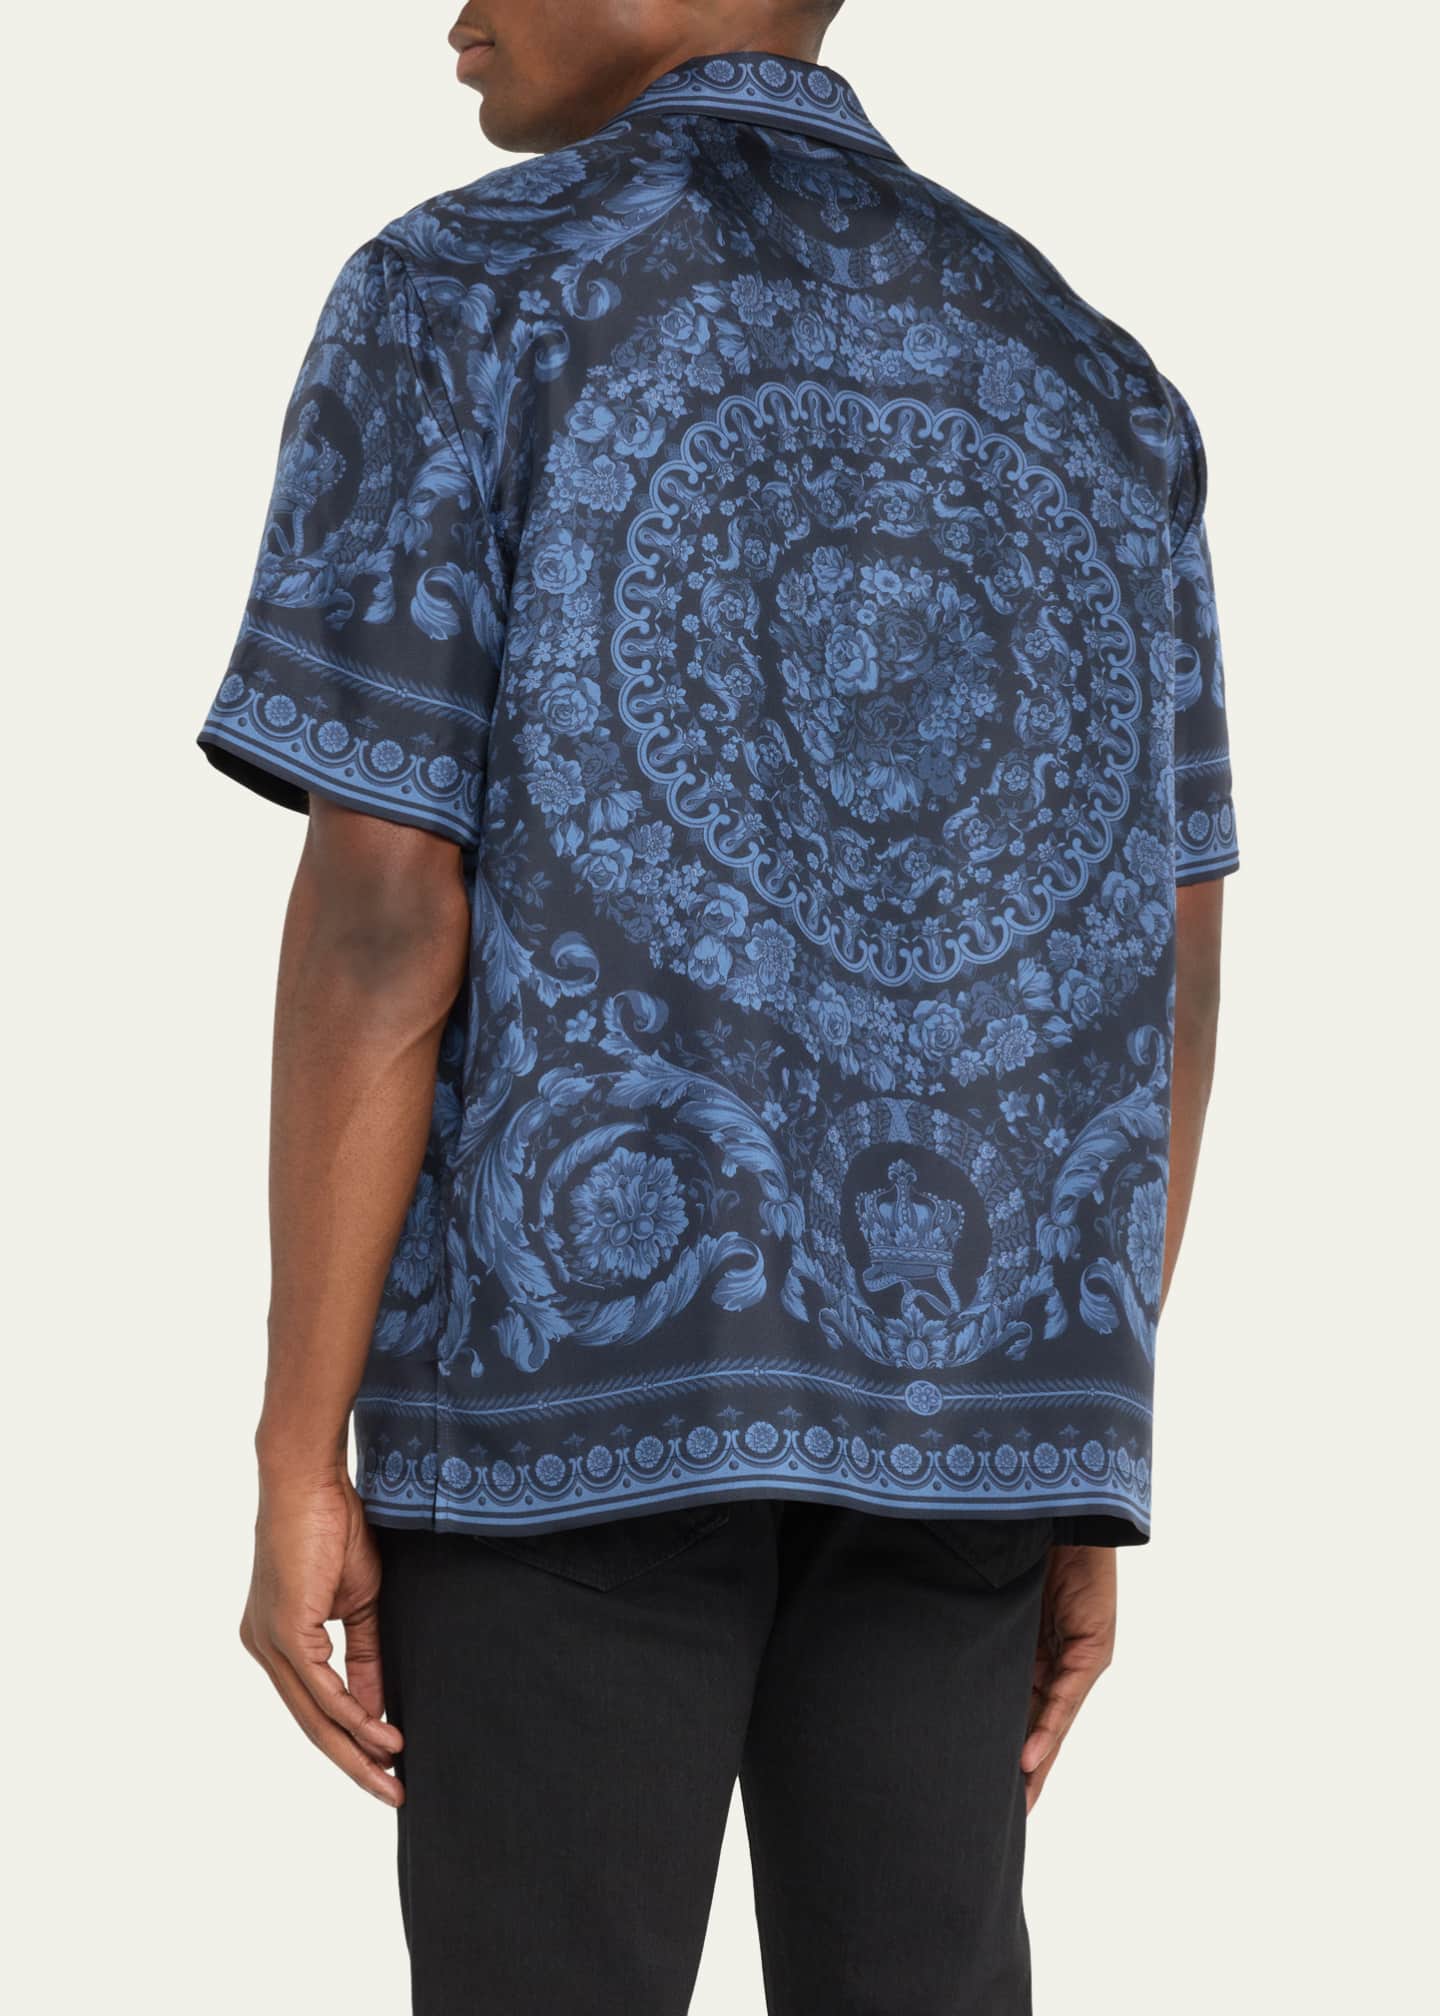 Versace Men's Baroque-Print Silk Short-Sleeve Shirt